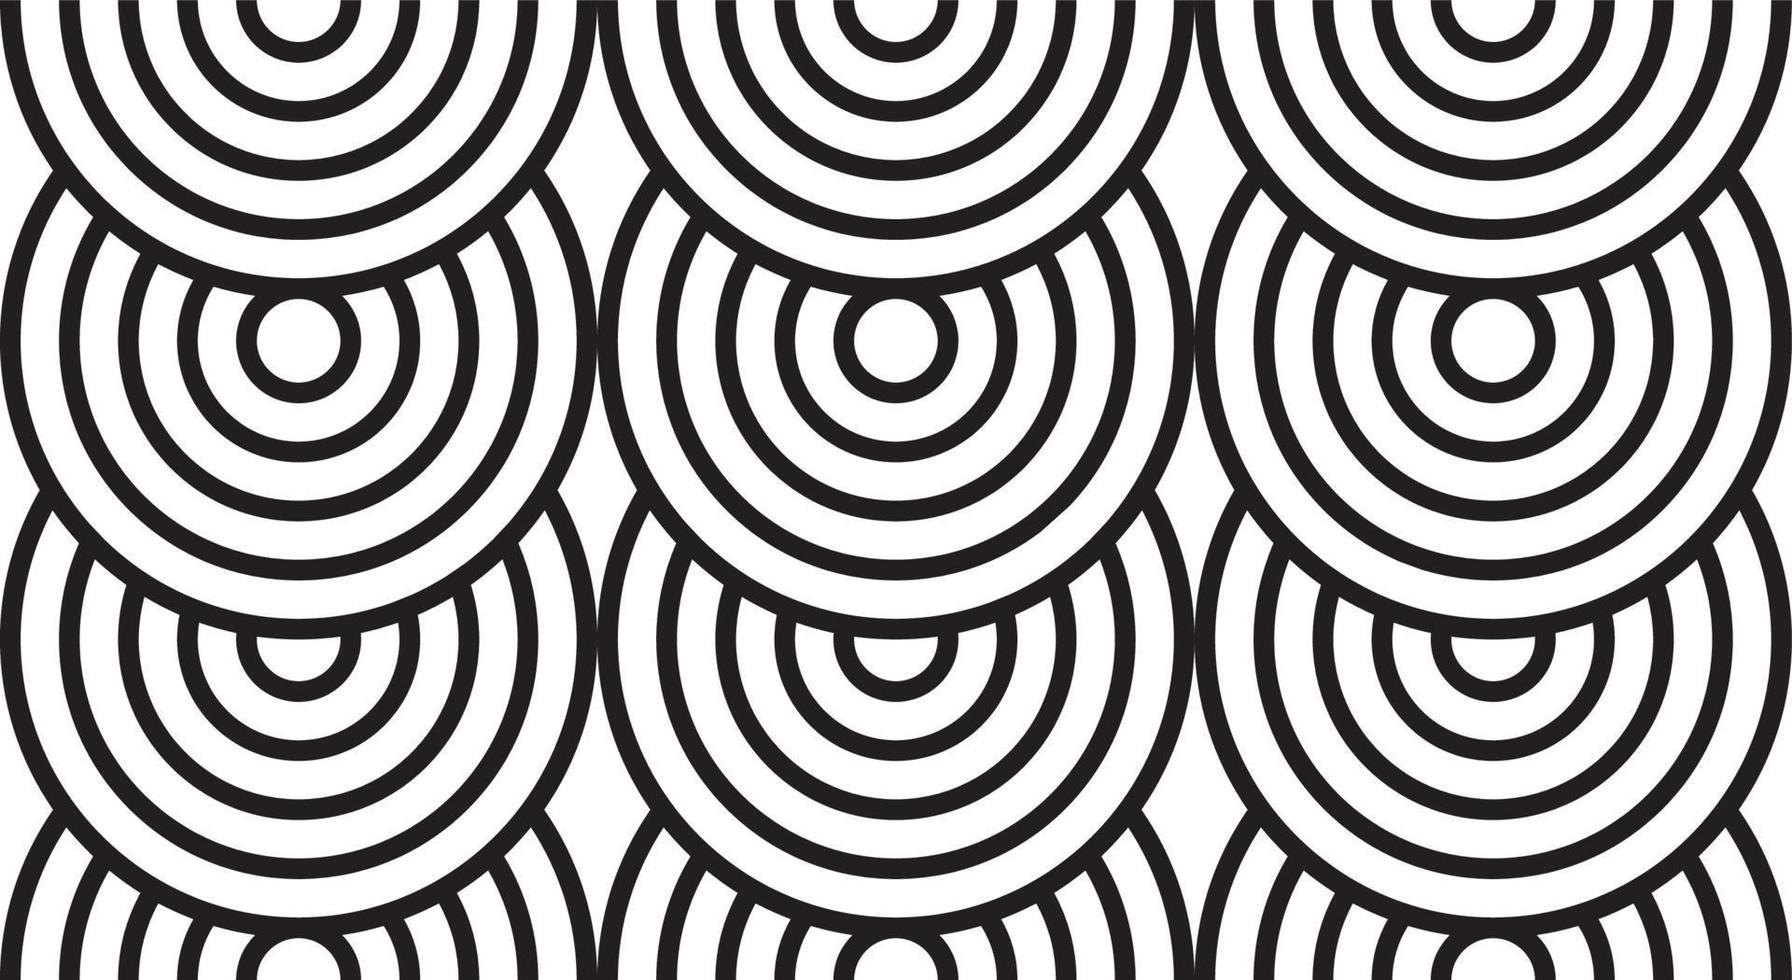 seamless mönster med cirkelform, svart och vit färg, modern design ränder bakgrund. vektor illustration.